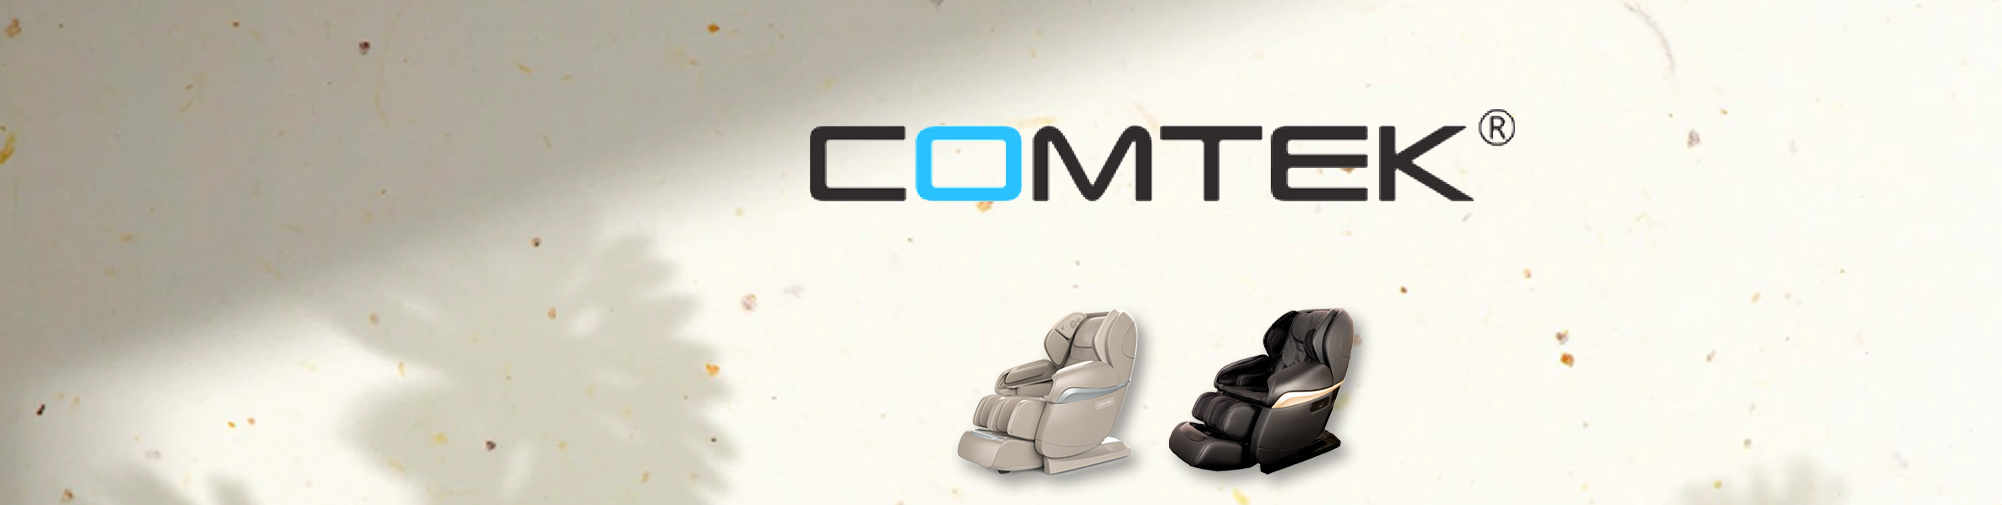 COMTEK - profesyonel orijinal üretici | Masaj koltuğu dünyası